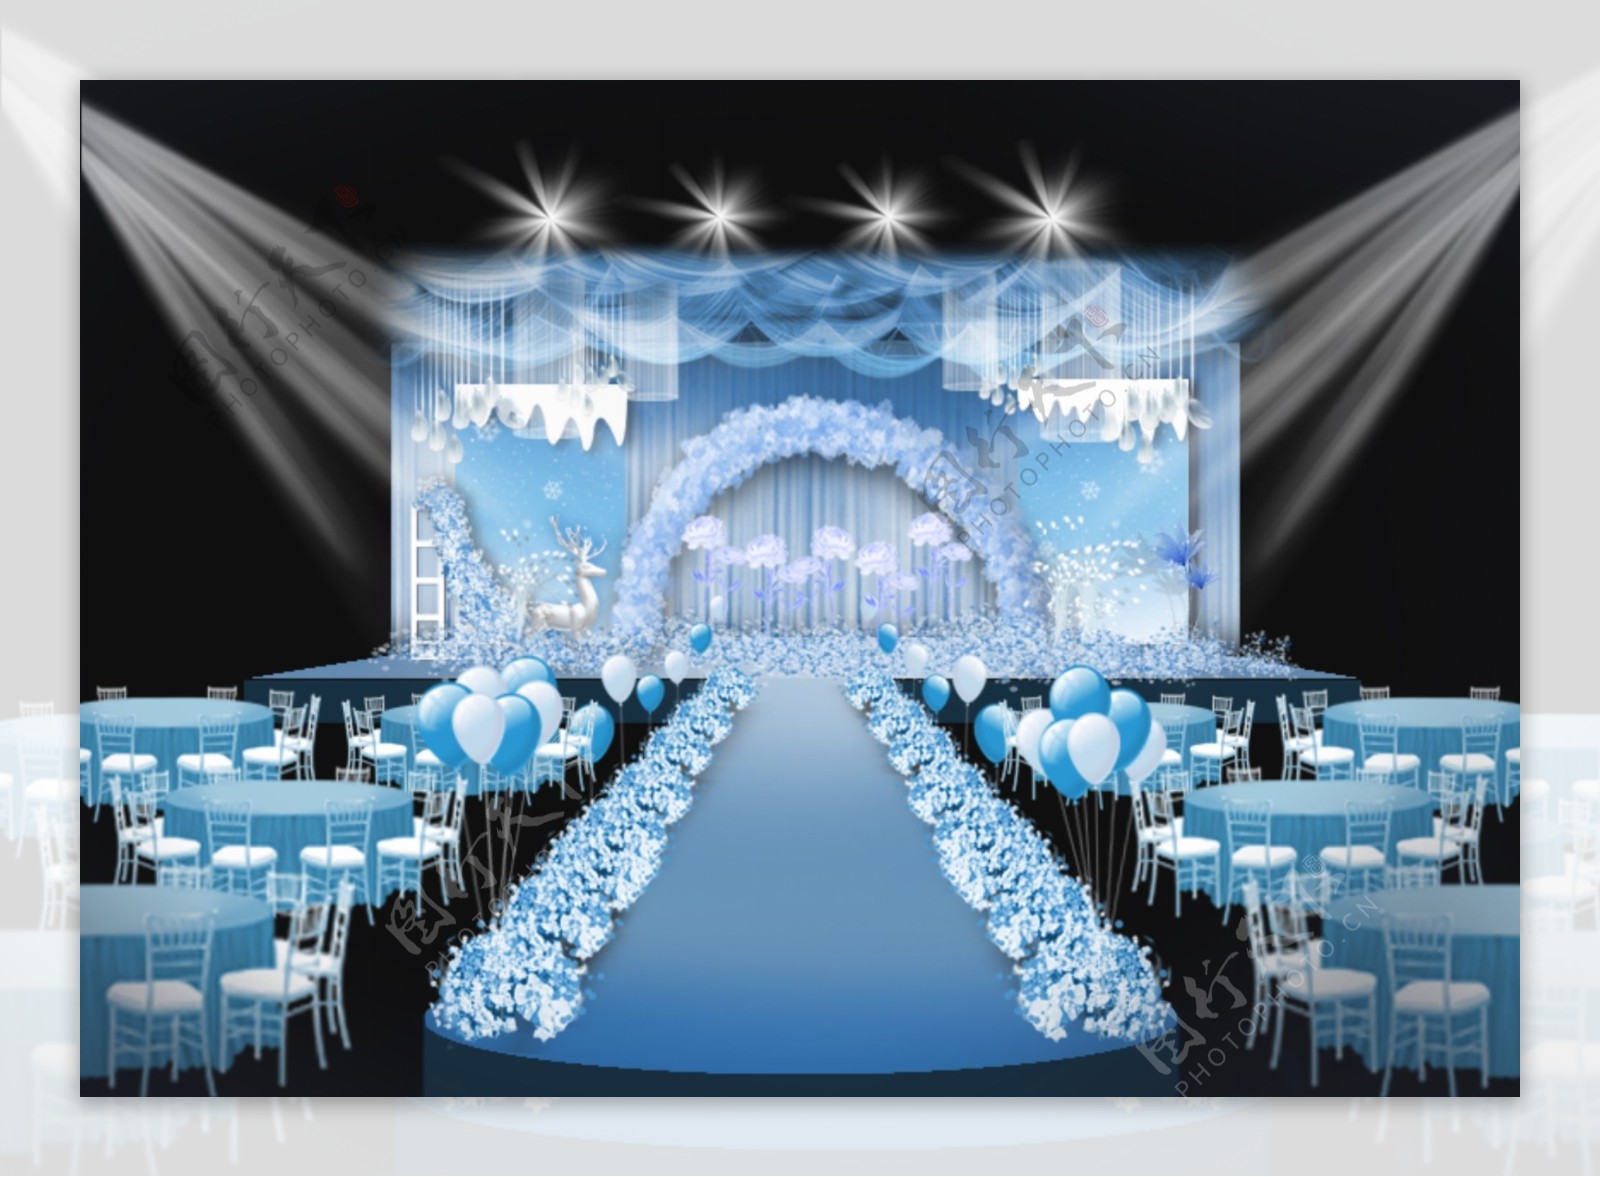 蓝色浪漫冰雪婚礼效果图设计